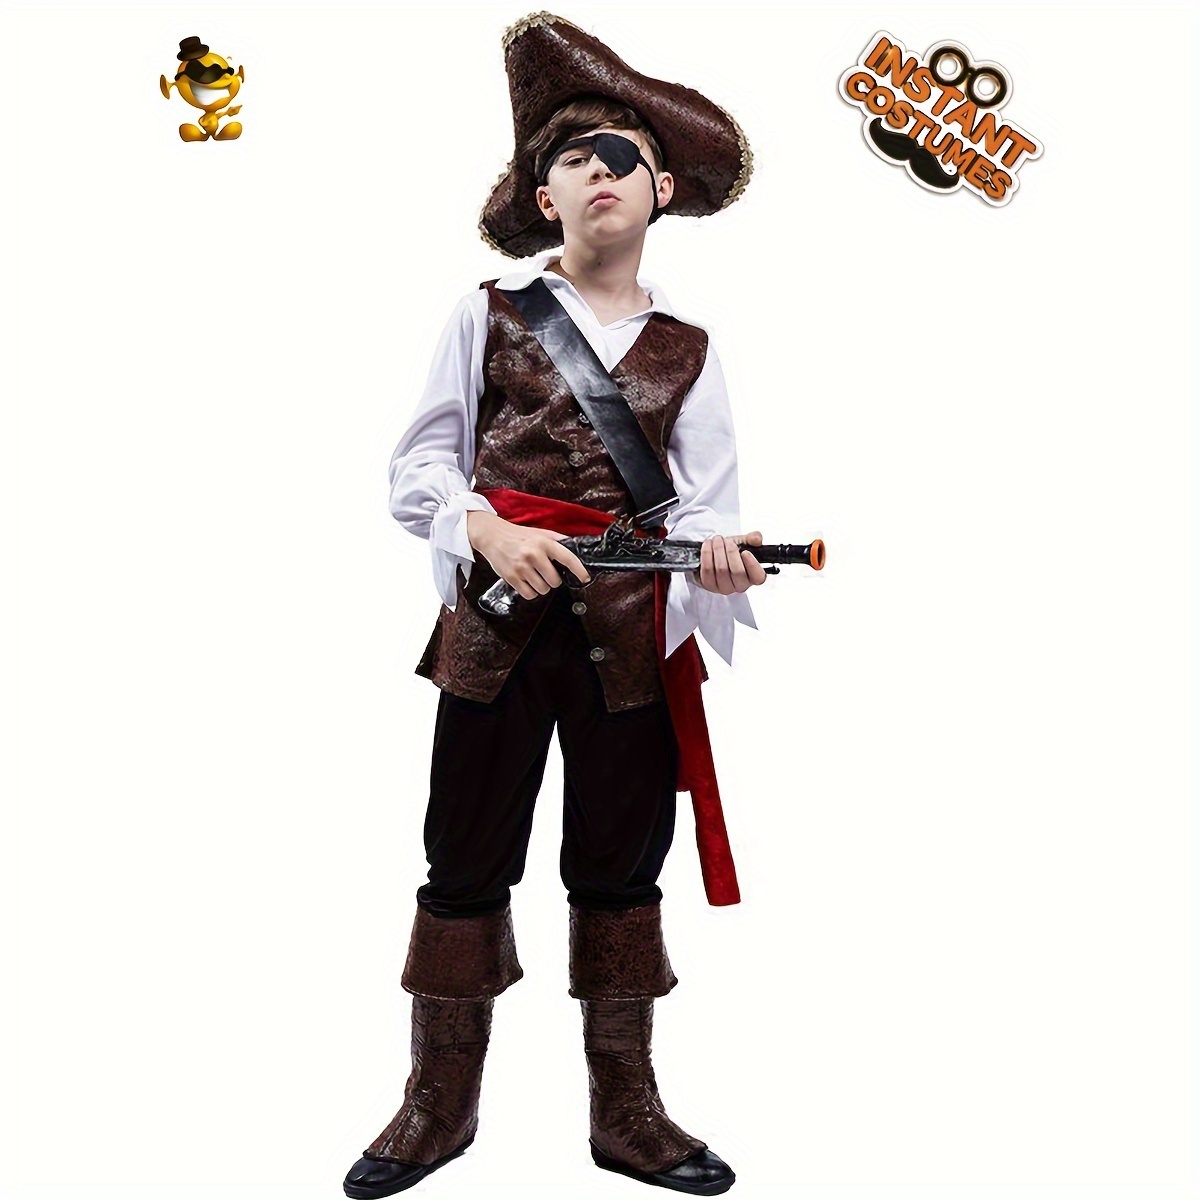 Juego de 3 accesorios para disfraz de pirata, incluye gorro de pirata  negro, diadema con estampado de calavera, parches de ojos de pirata,  capitán